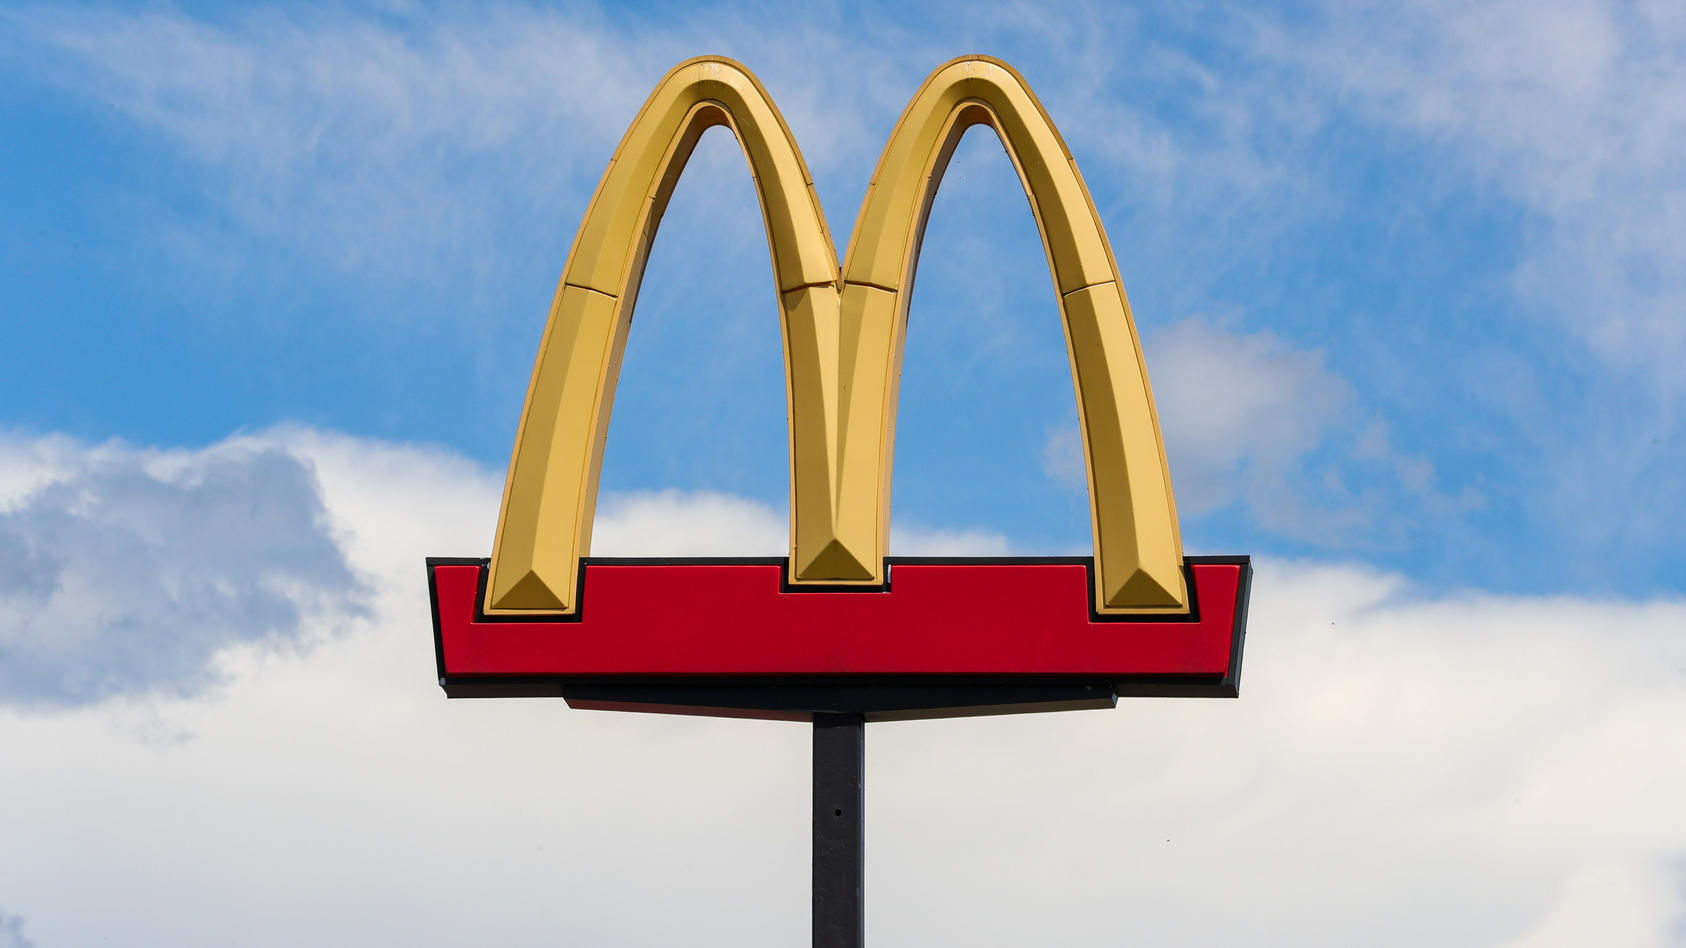 Il logo di McDonald's contro un cielo blu